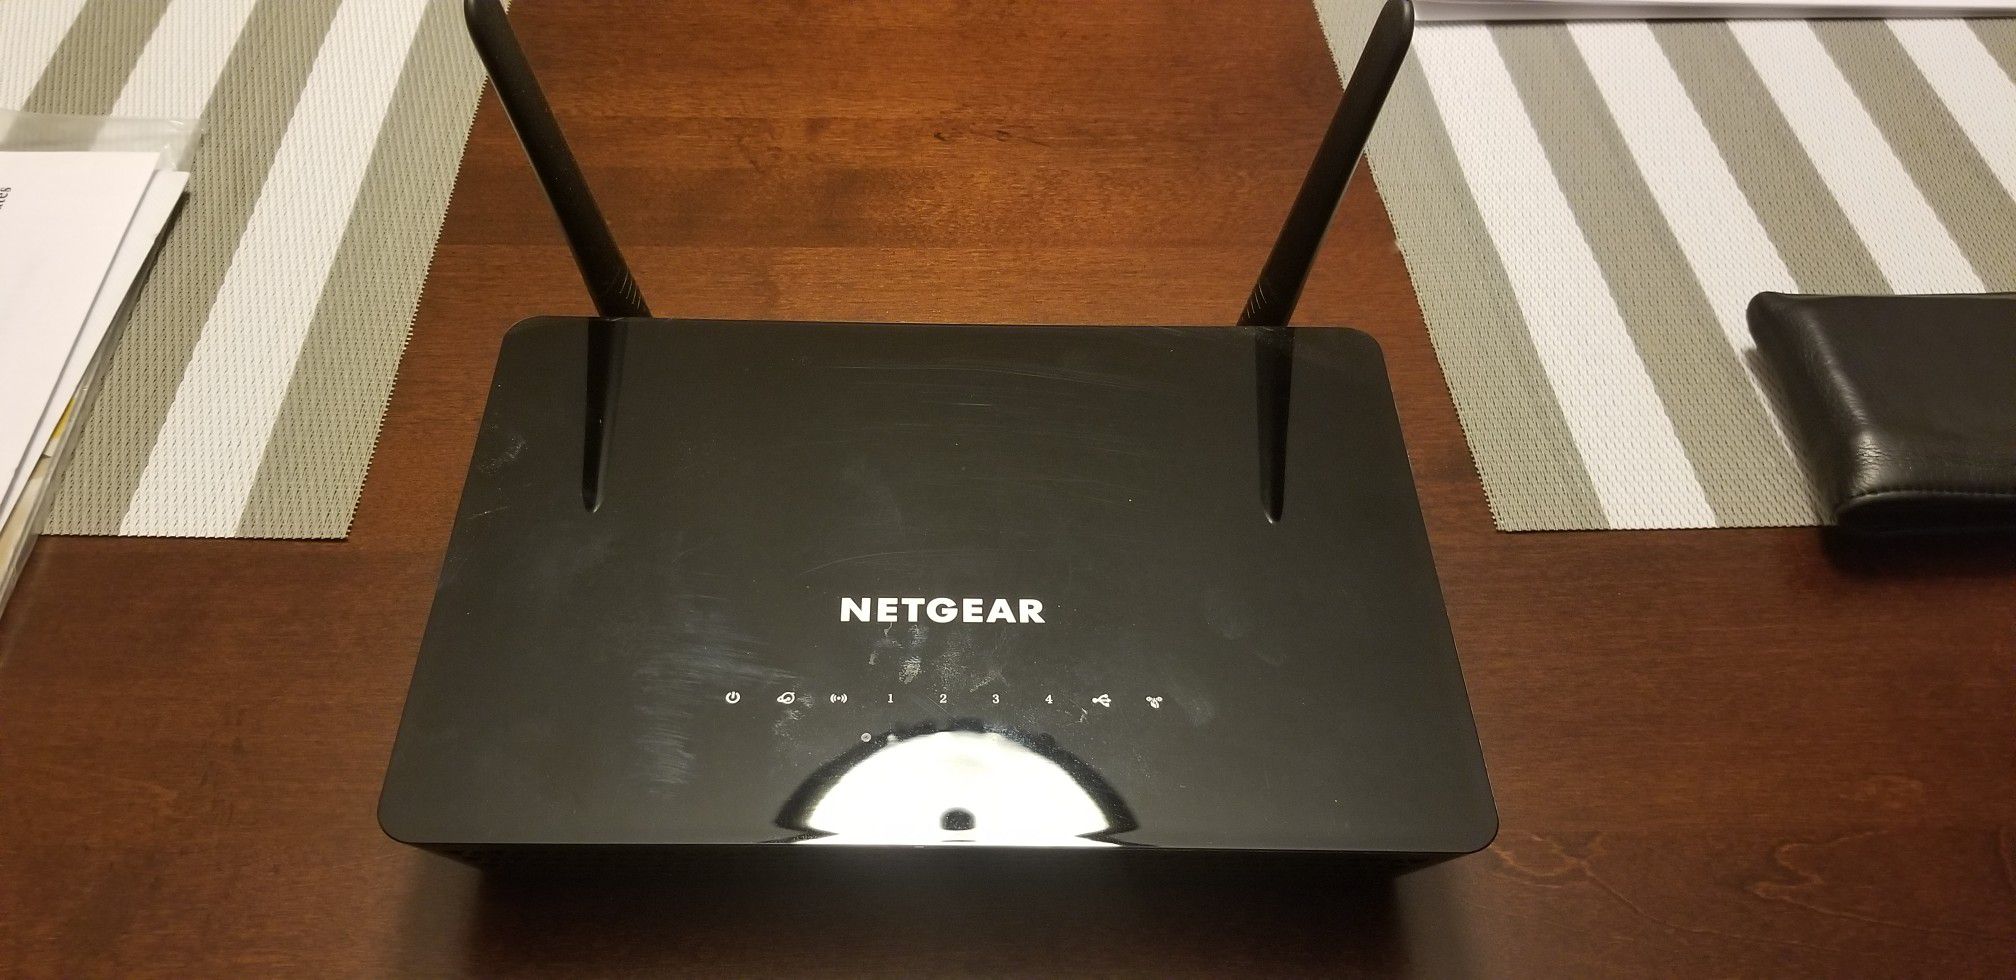 Netgear wifi router